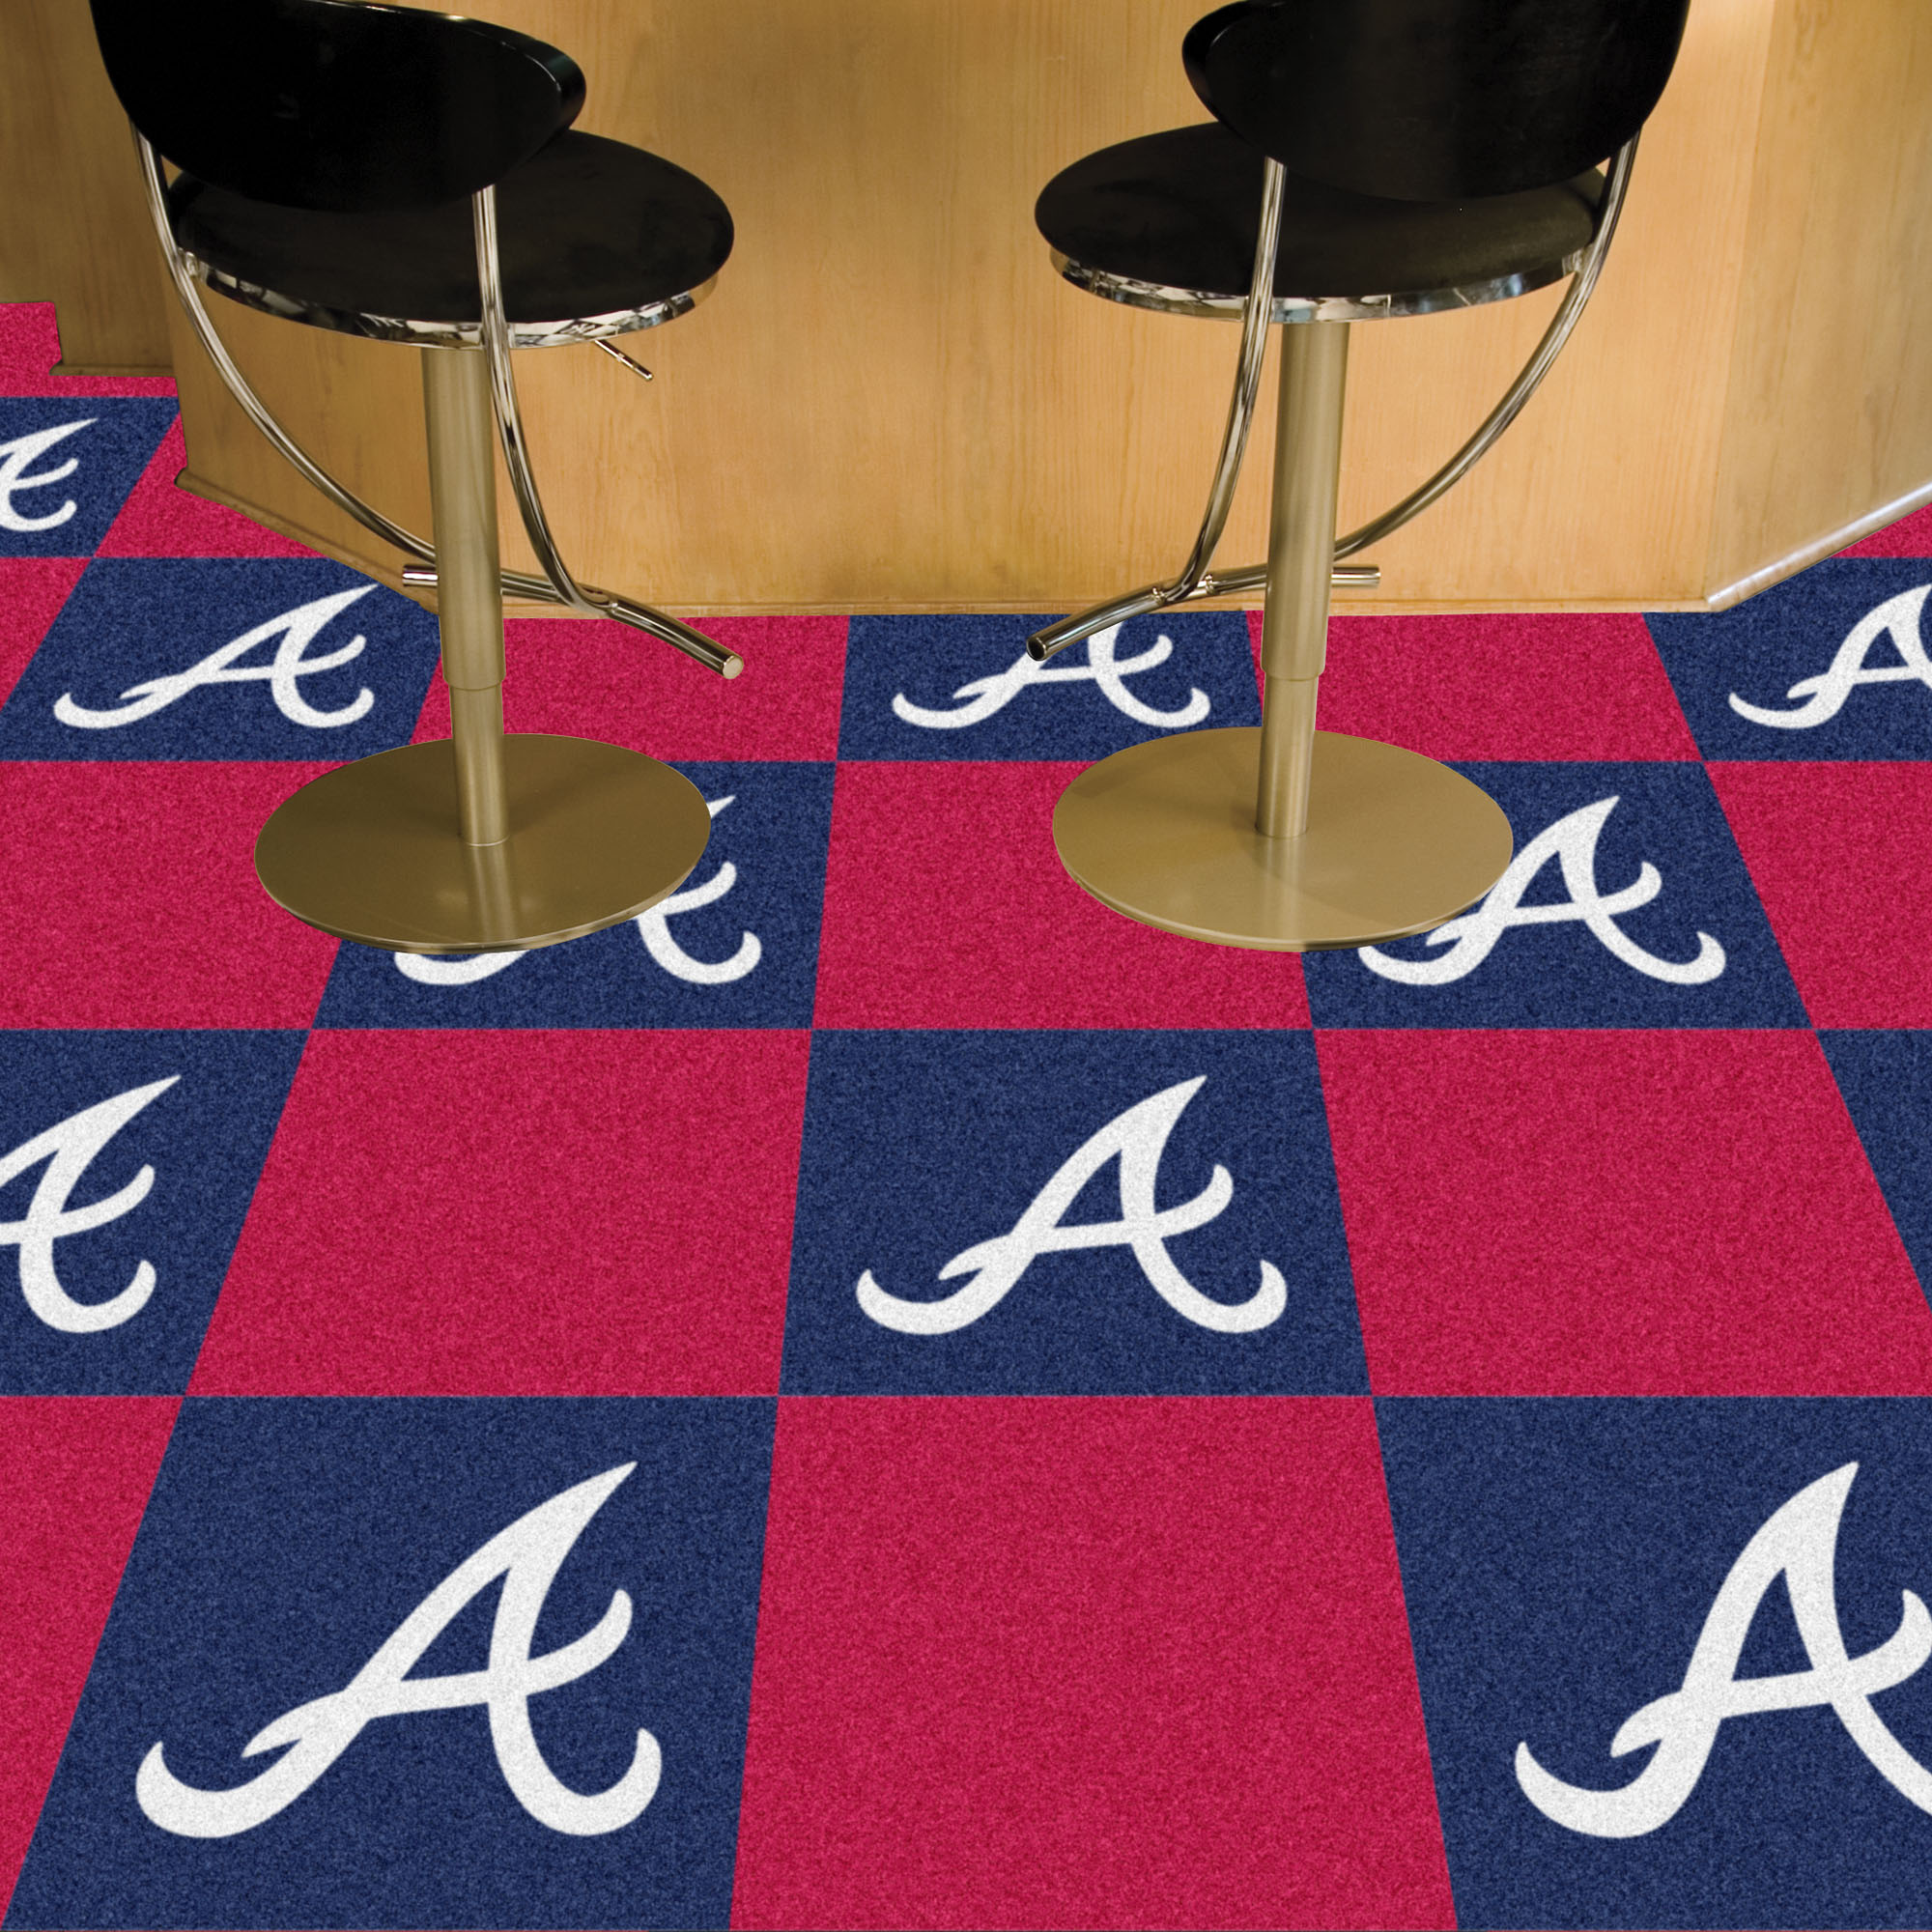 Atlanta Braves Team Carpet Tiles - 45 sq ft